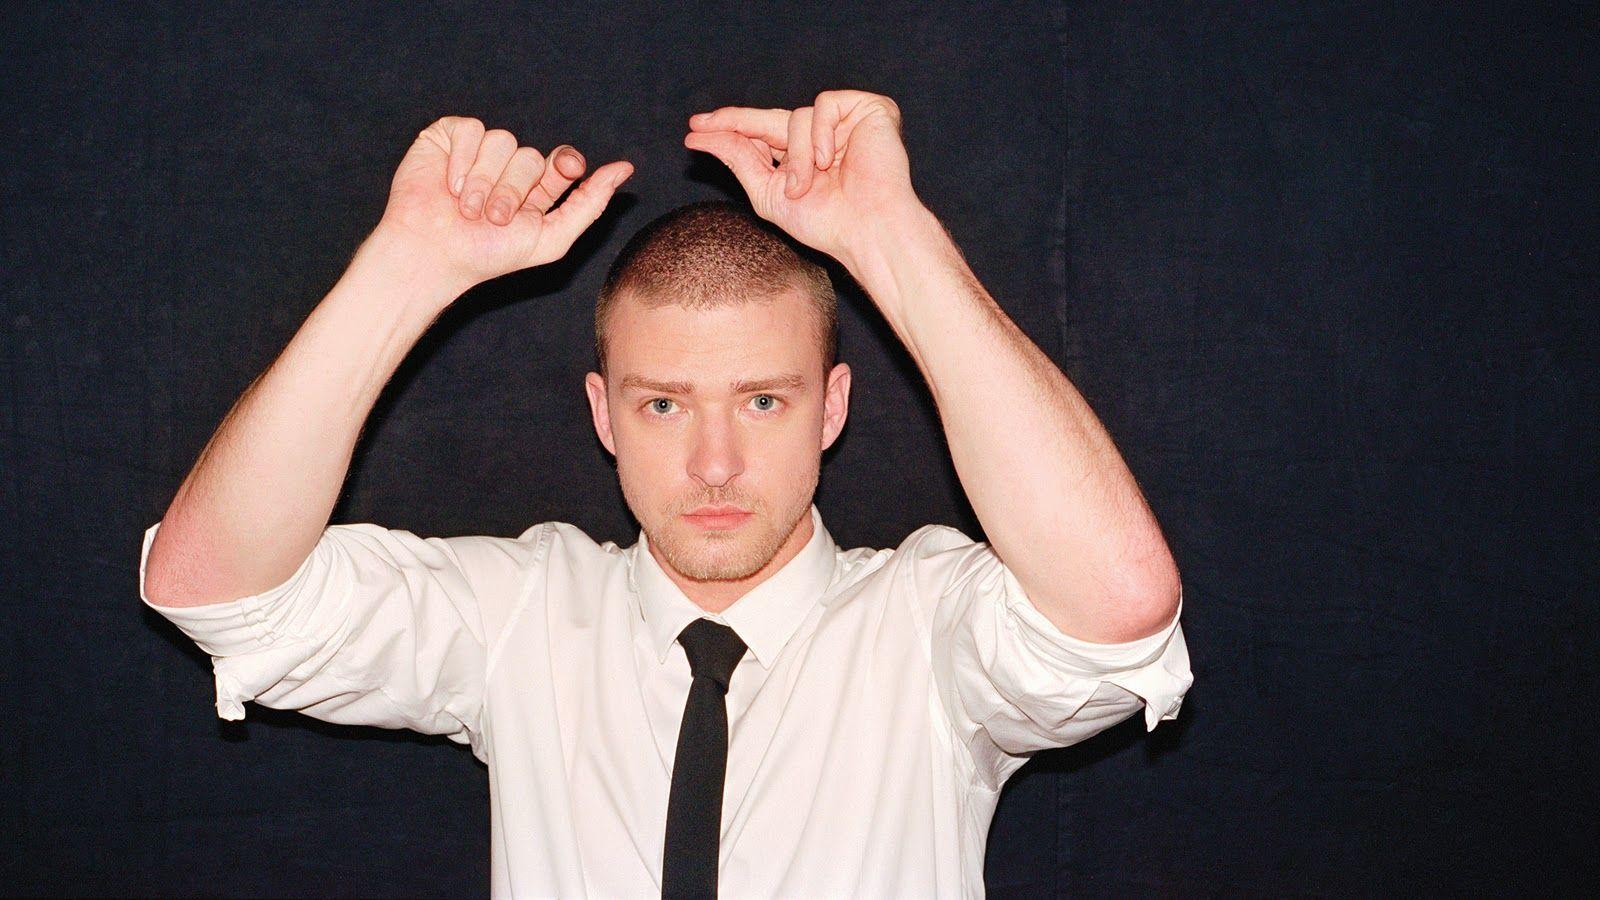 Justin Timberlake Dancing with White Shirt